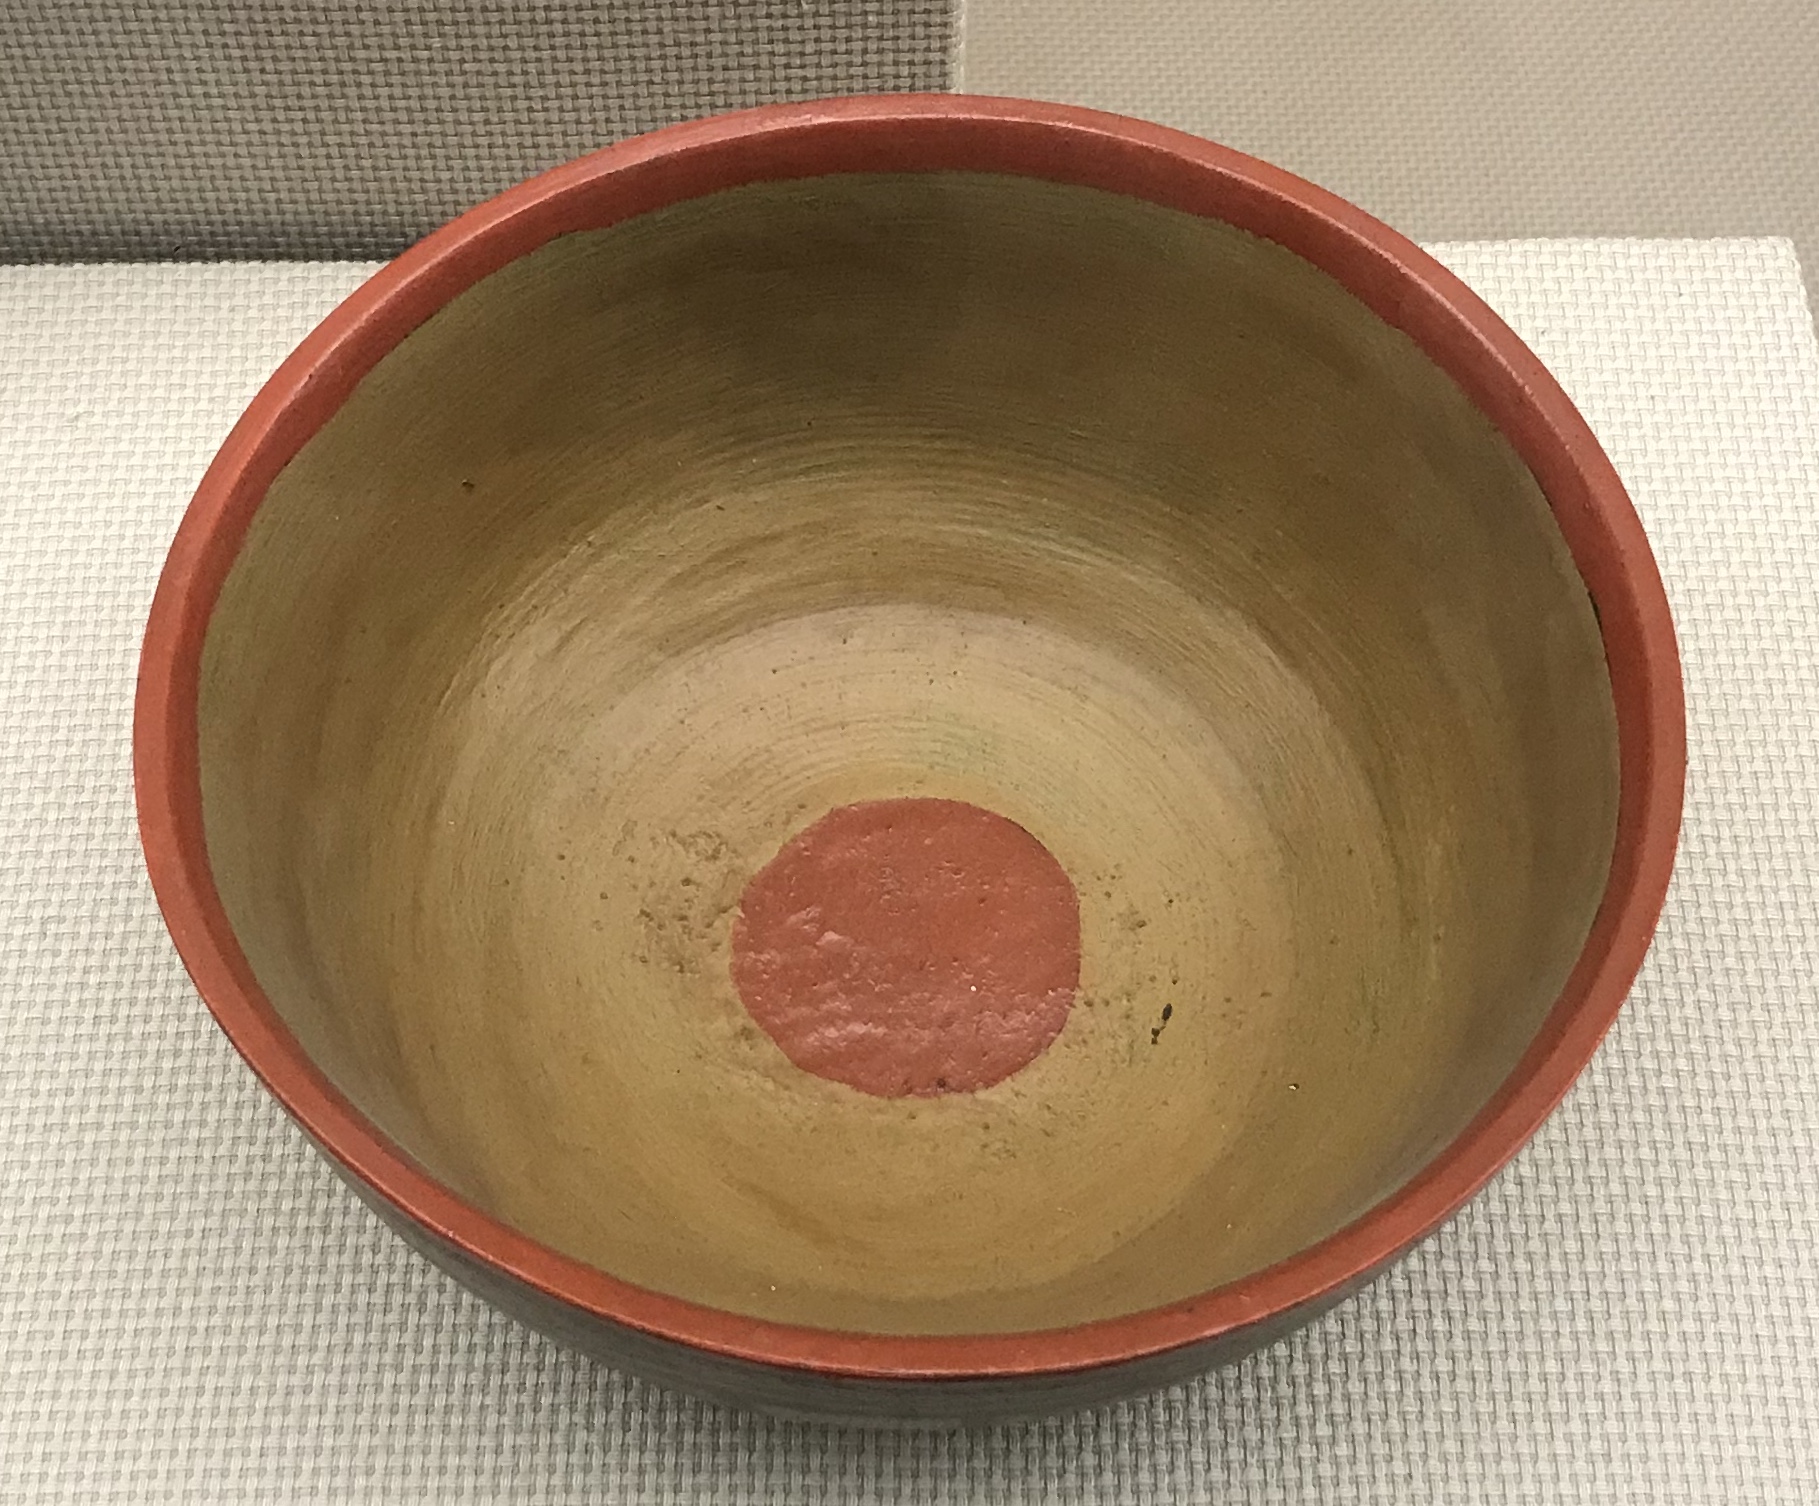  彩木碗-彜族漆器-四川民族文物館-四川博物館-成都